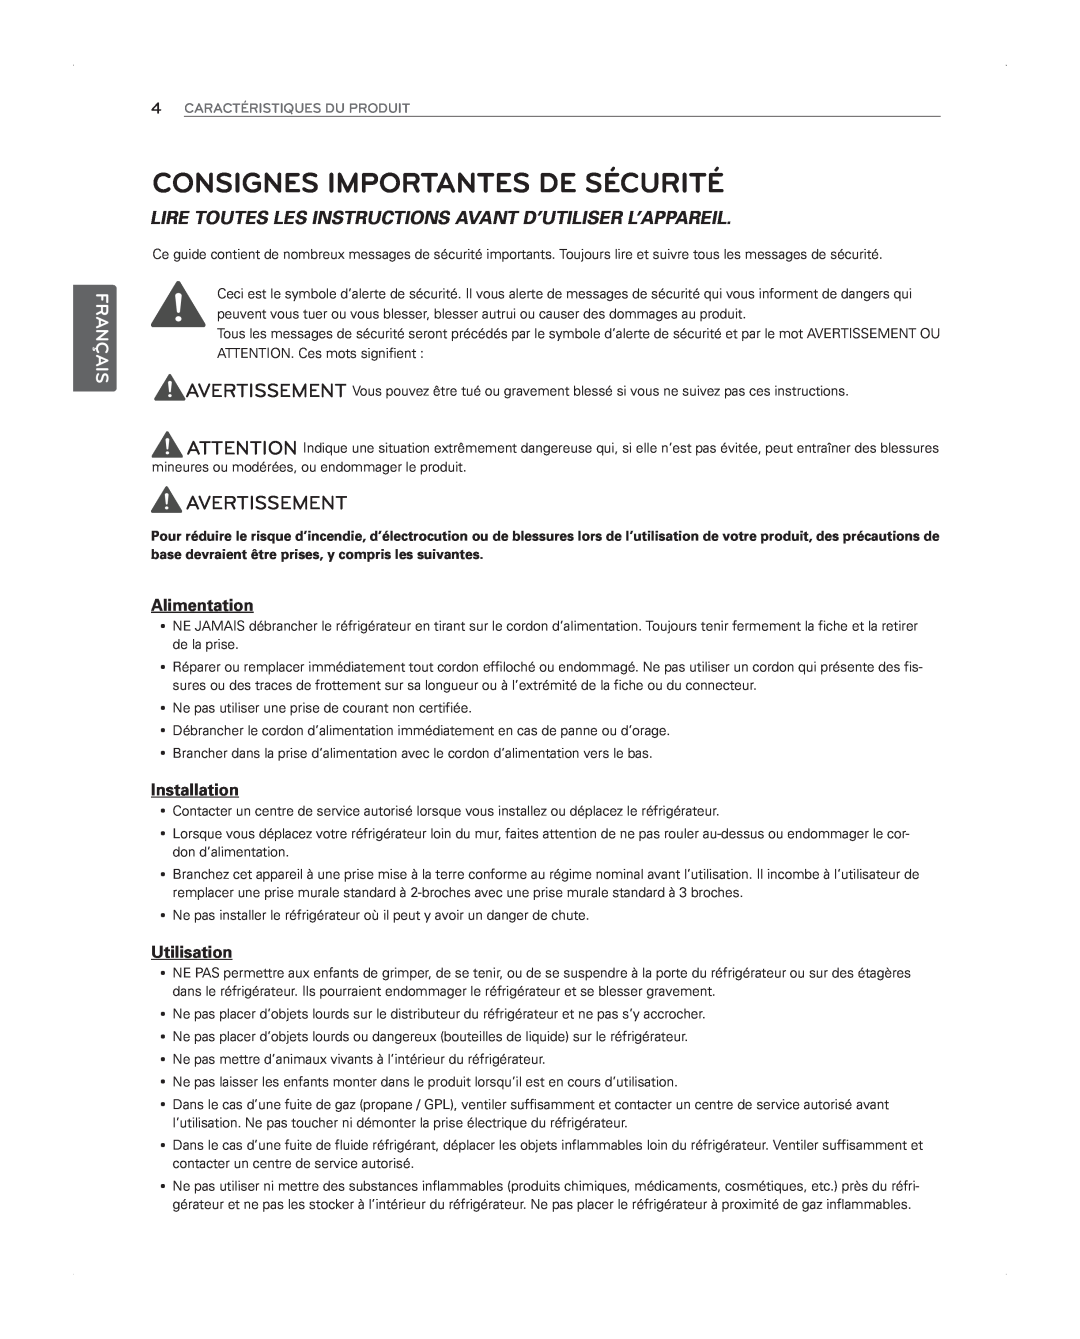 LG Electronics LFX31945ST Consignes Importantes De Sécurité, Avertissement, Alimentation, Utilisation, Français 